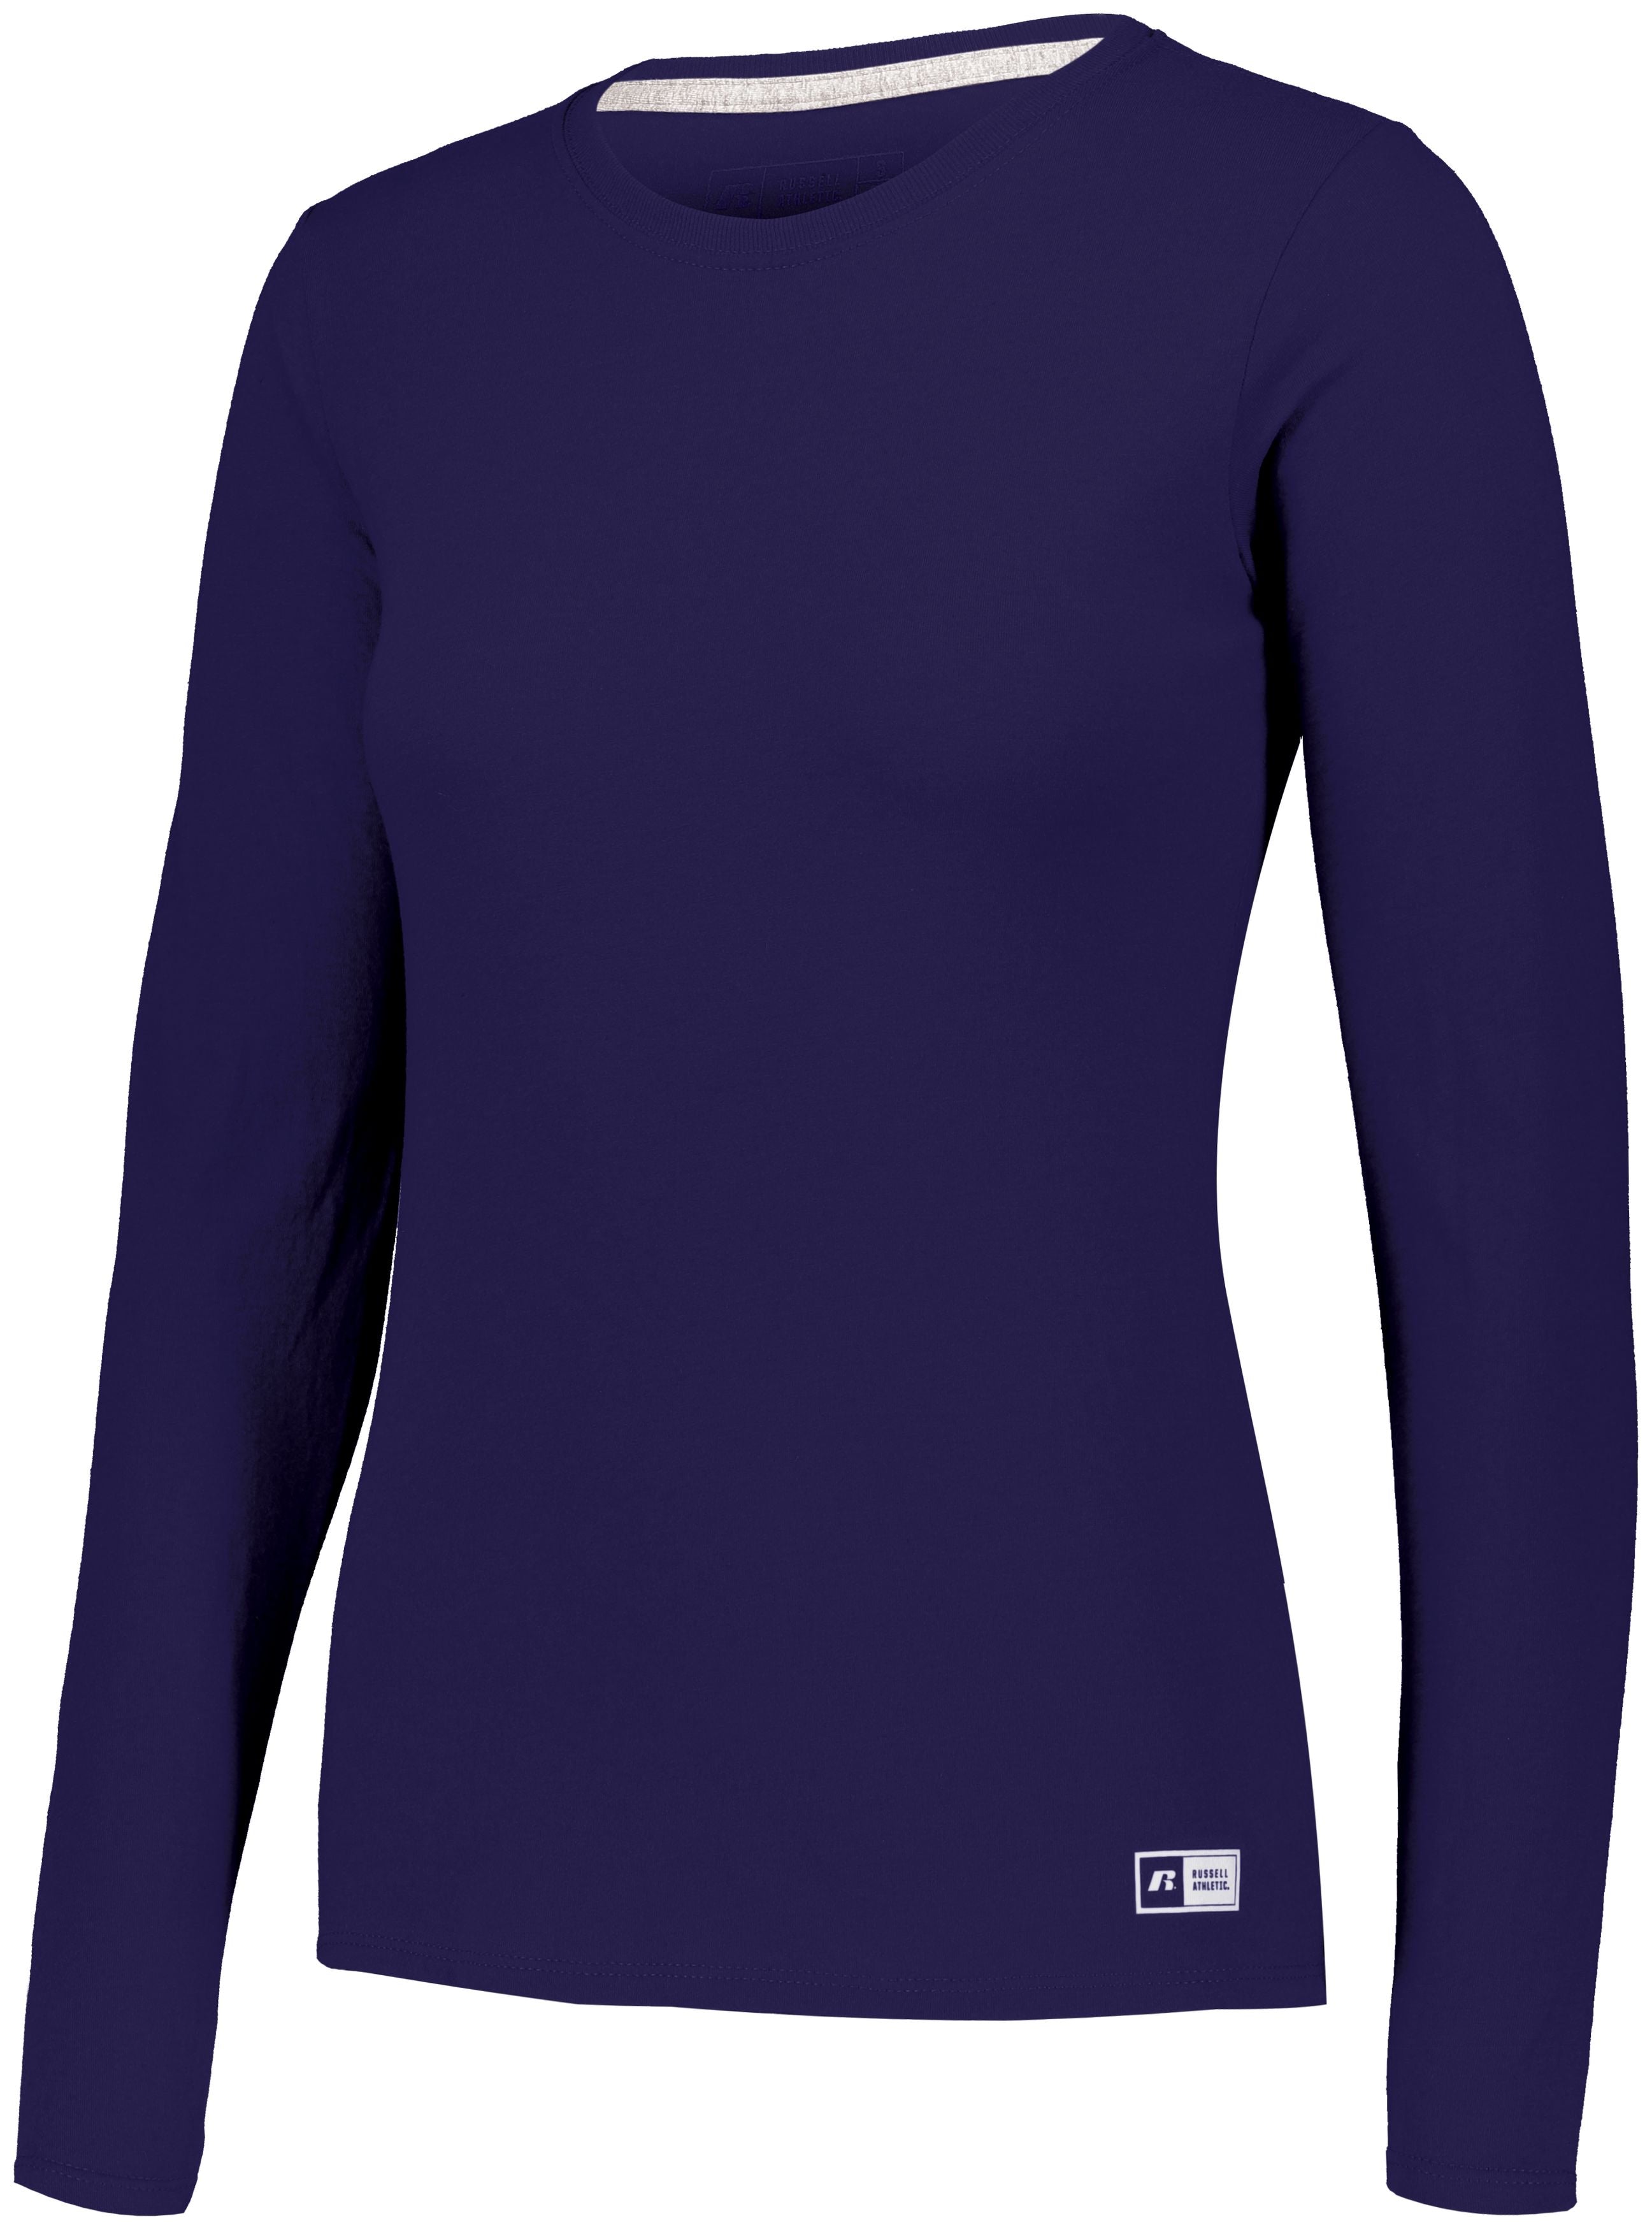 Russell Athletic Ladies Essential Long Sleeve Tee in Purple  -Part of the Ladies, Ladies-Tee-Shirt, T-Shirts, Russell-Athletic-Products, Shirts product lines at KanaleyCreations.com